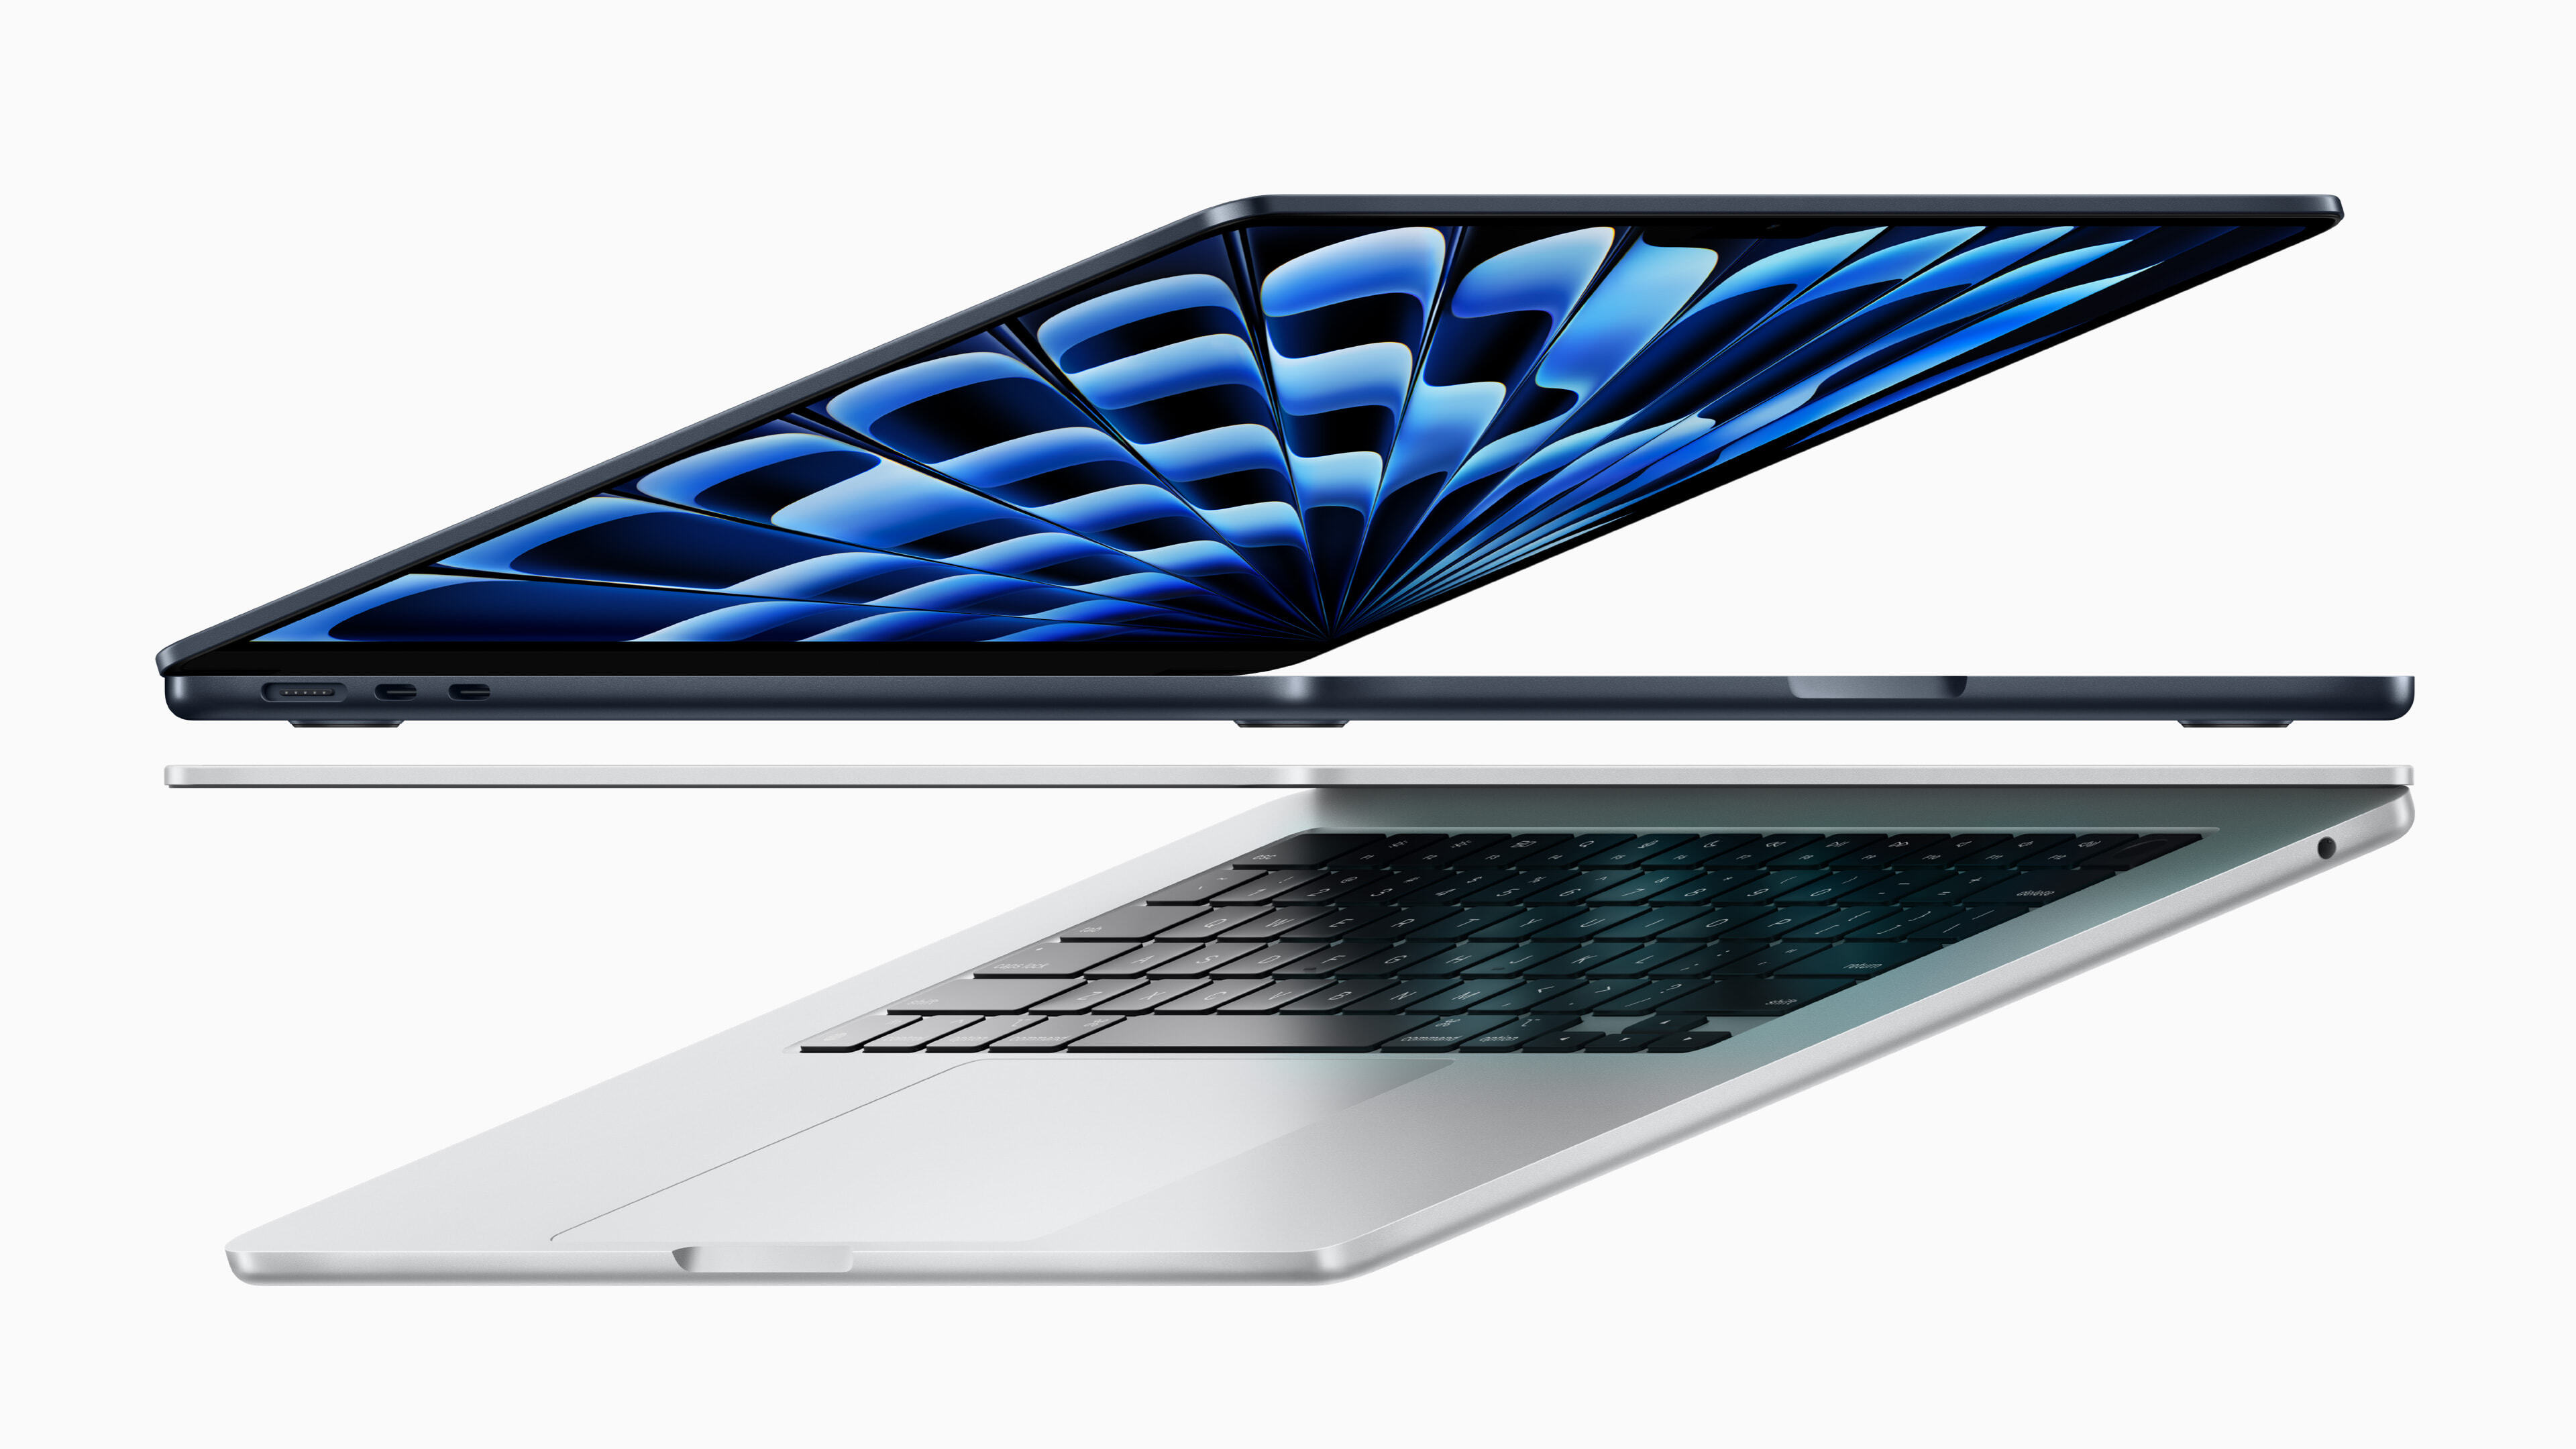 全新 13 吋與 15 吋 MacBook Air 搭載強大的 M3 晶片，具備超便攜設計、高效能和滿足一天所需的電池續航力。